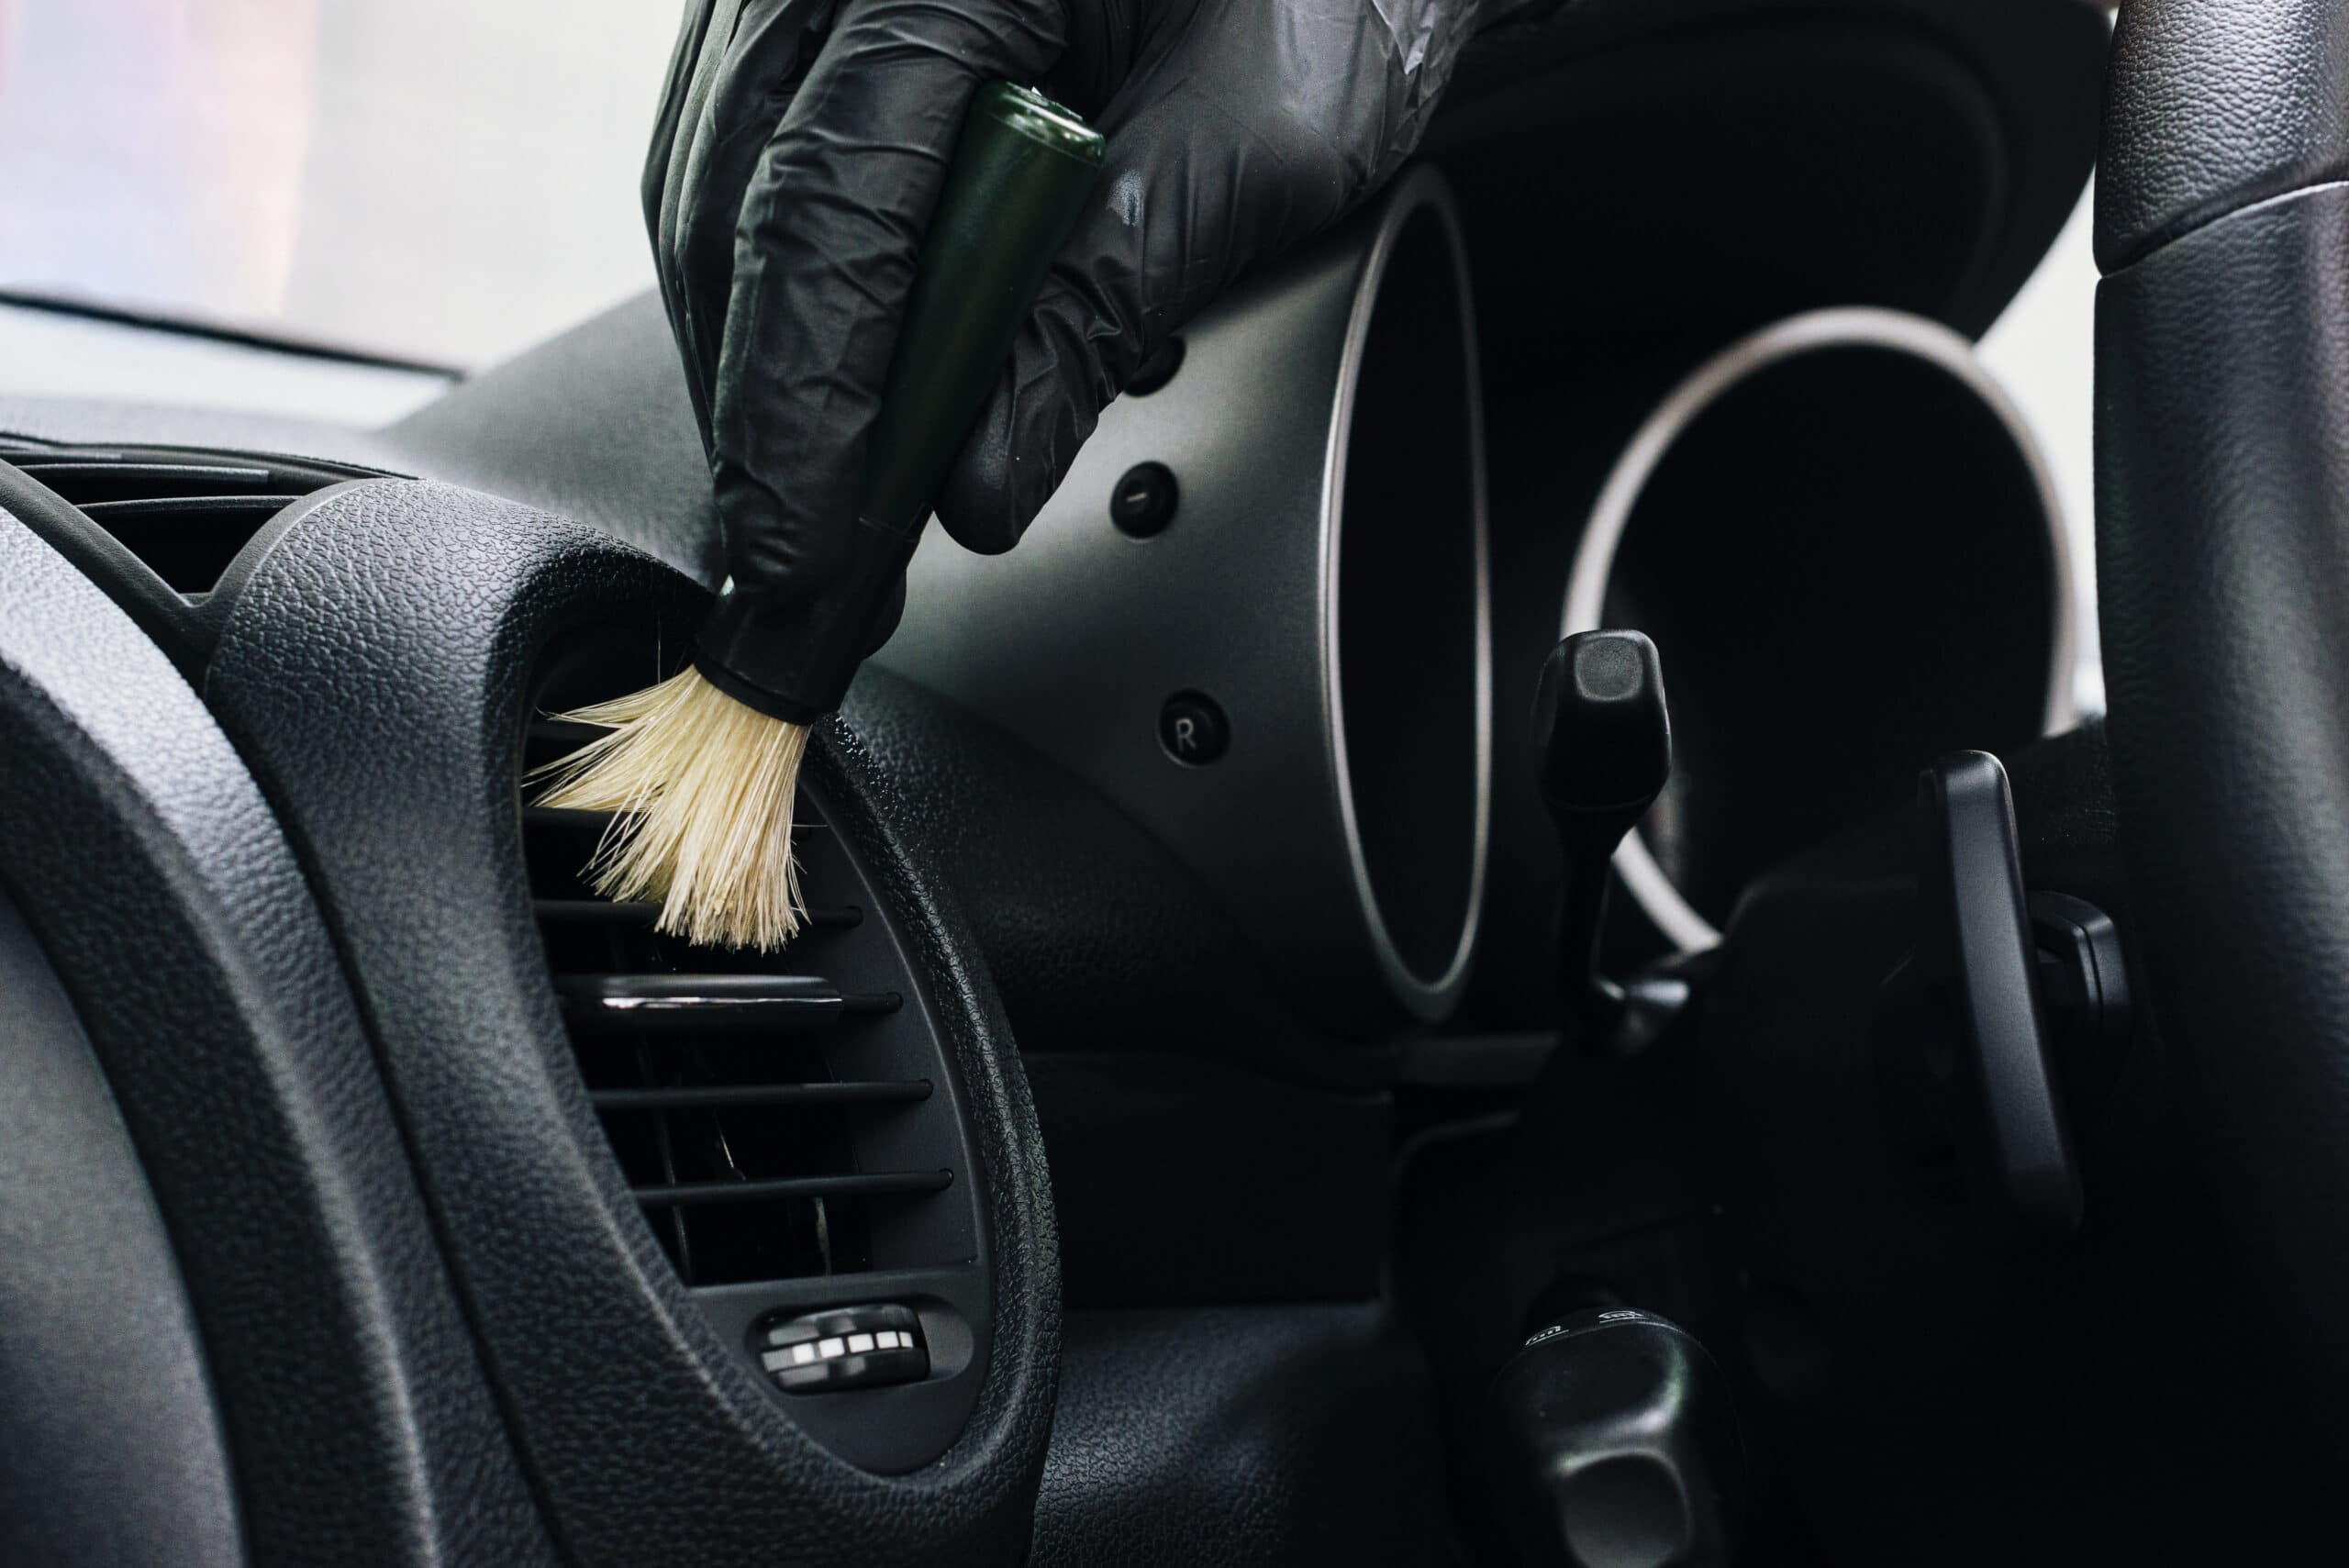 Higienização interna e do Ar Condicionado - Renault Kwid